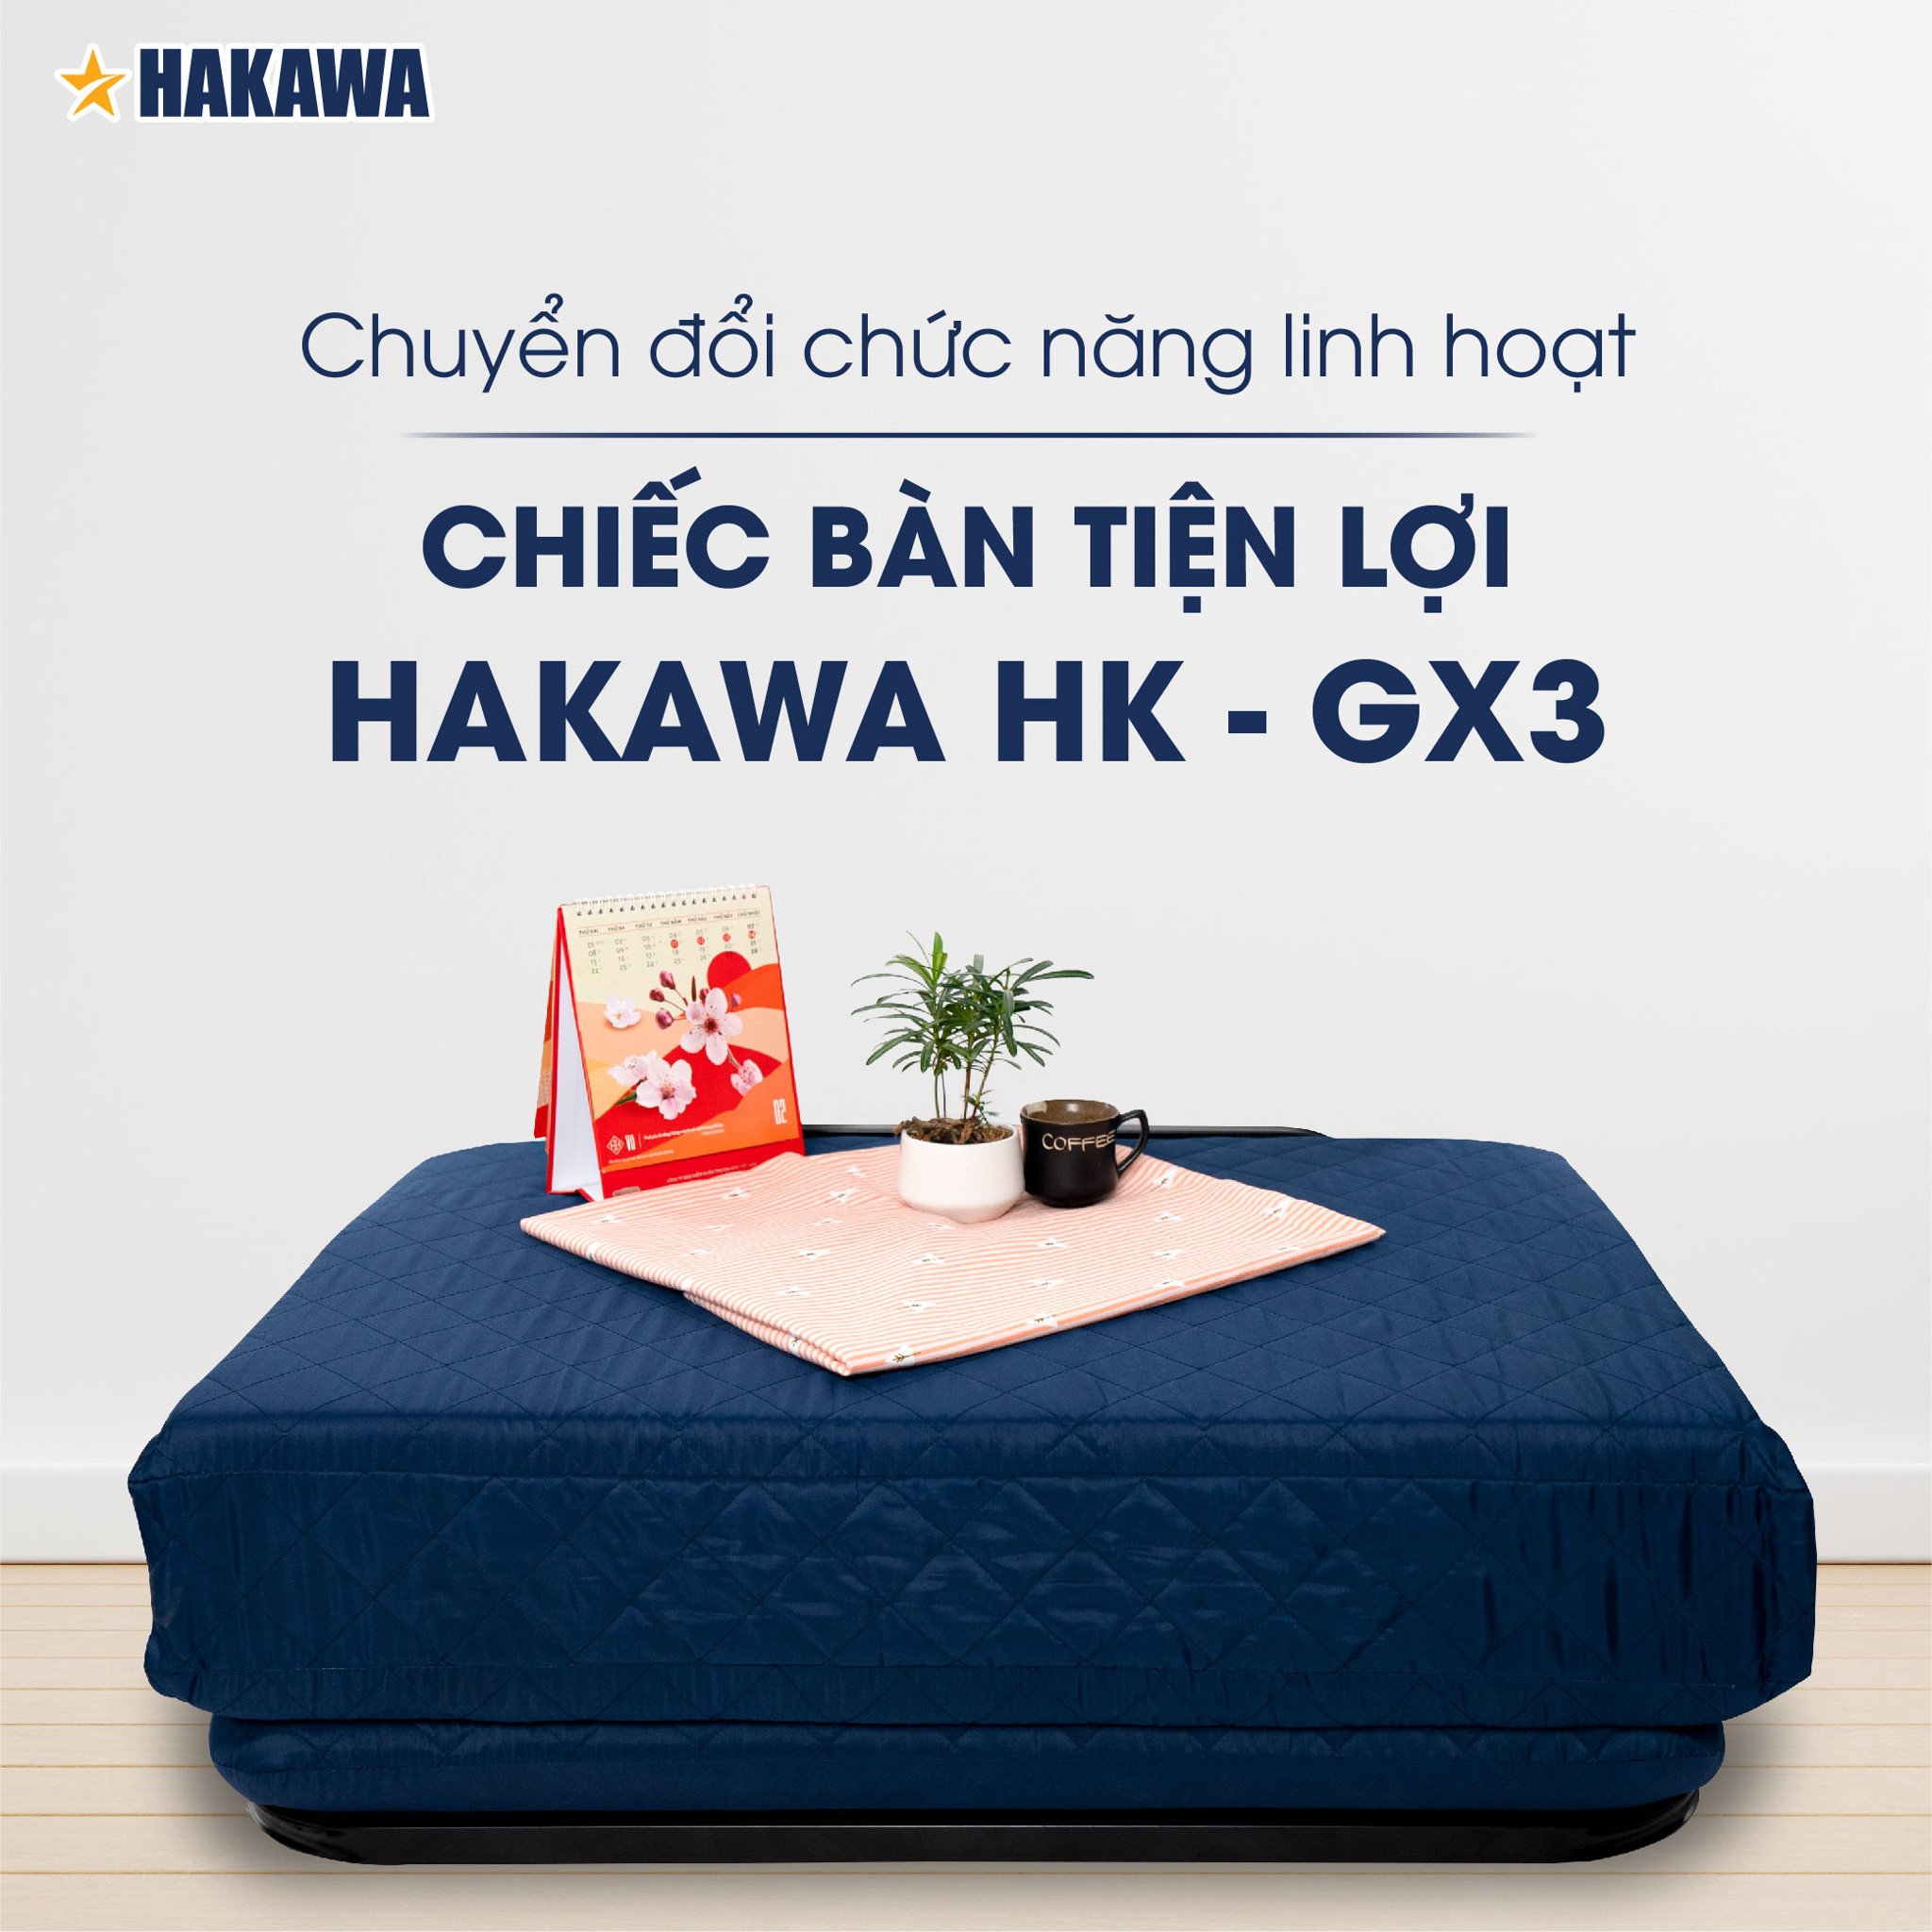 Một chiếc bàn xinh xắn được chuyển đối từ chiếc giường gấp HAKAWA